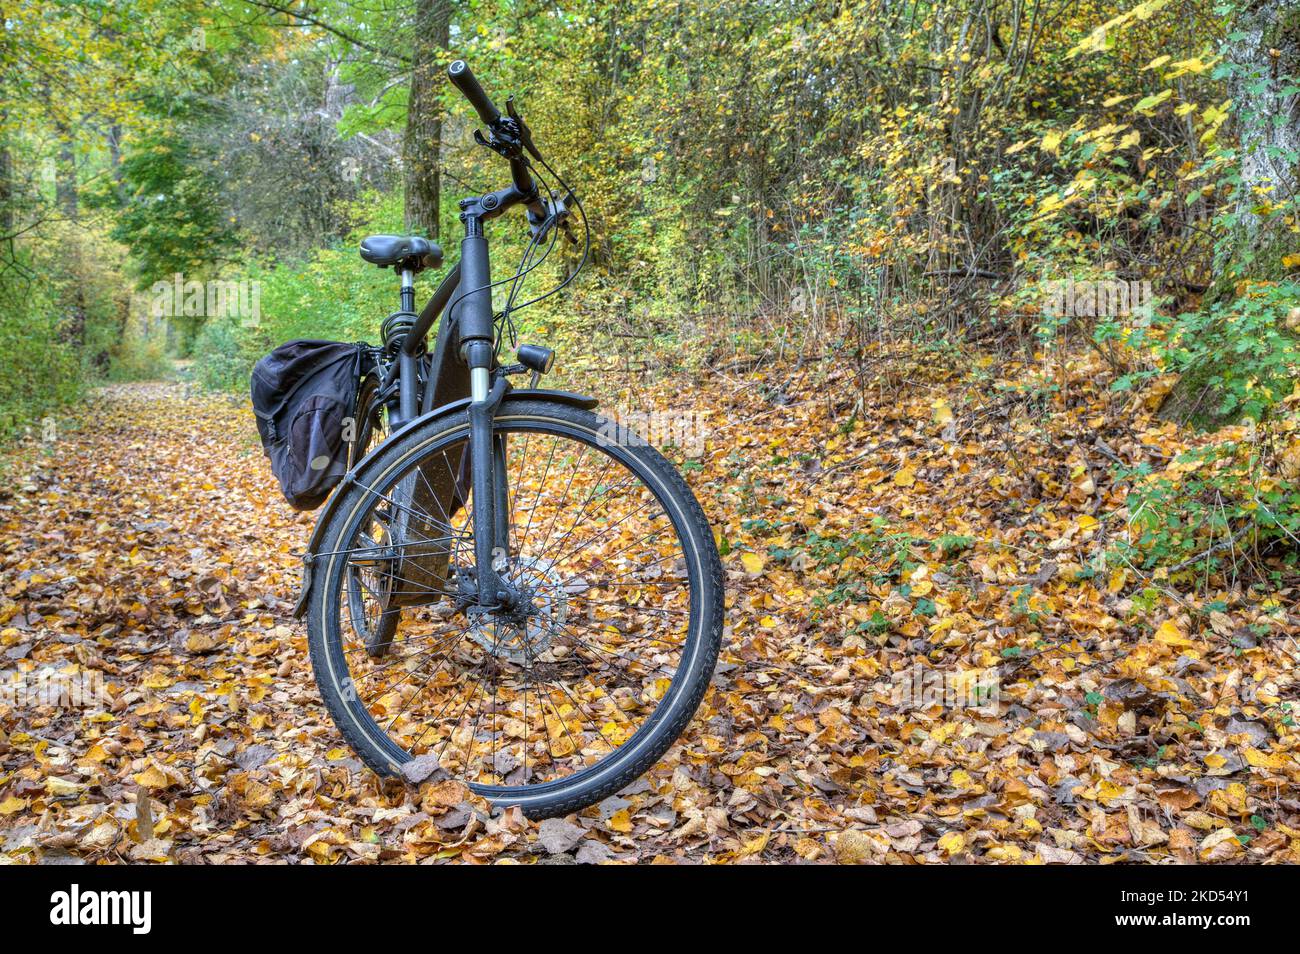 Im bunten Herbstwald steht ein E-Bike. Was schön aussieht, kann für Radfahrer gefährlich sein. Stockfoto